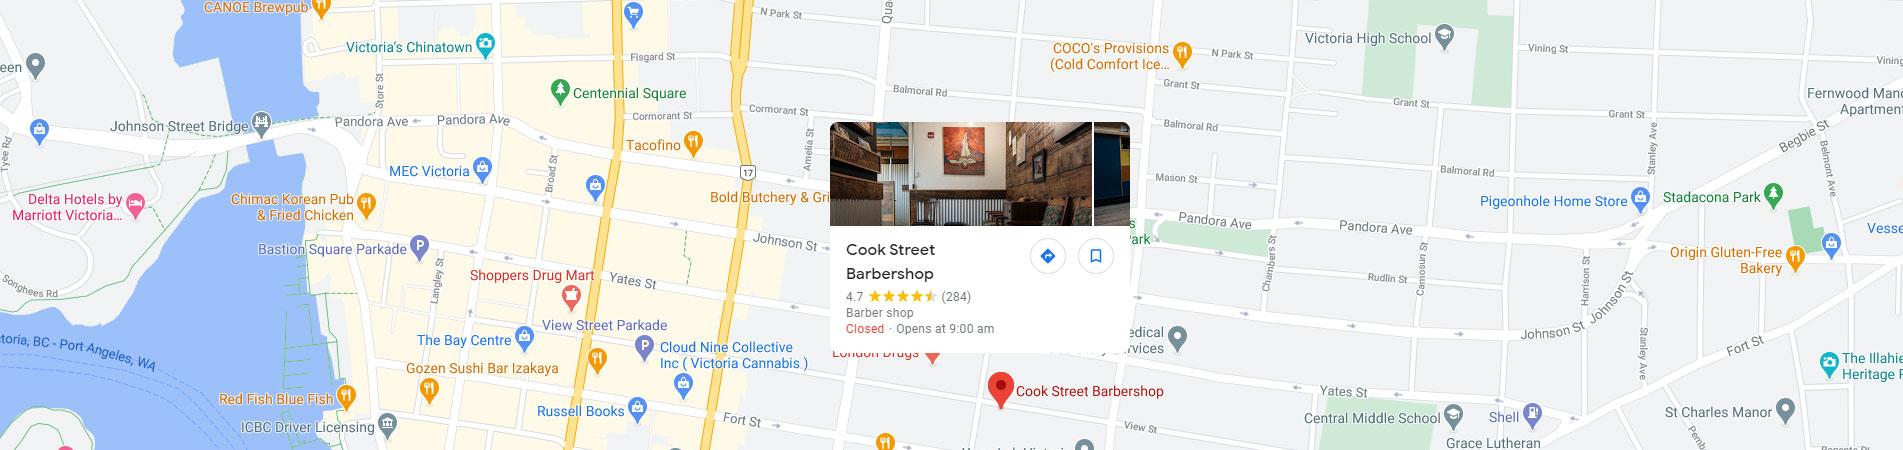 Cook Street Barbershop Contact Us